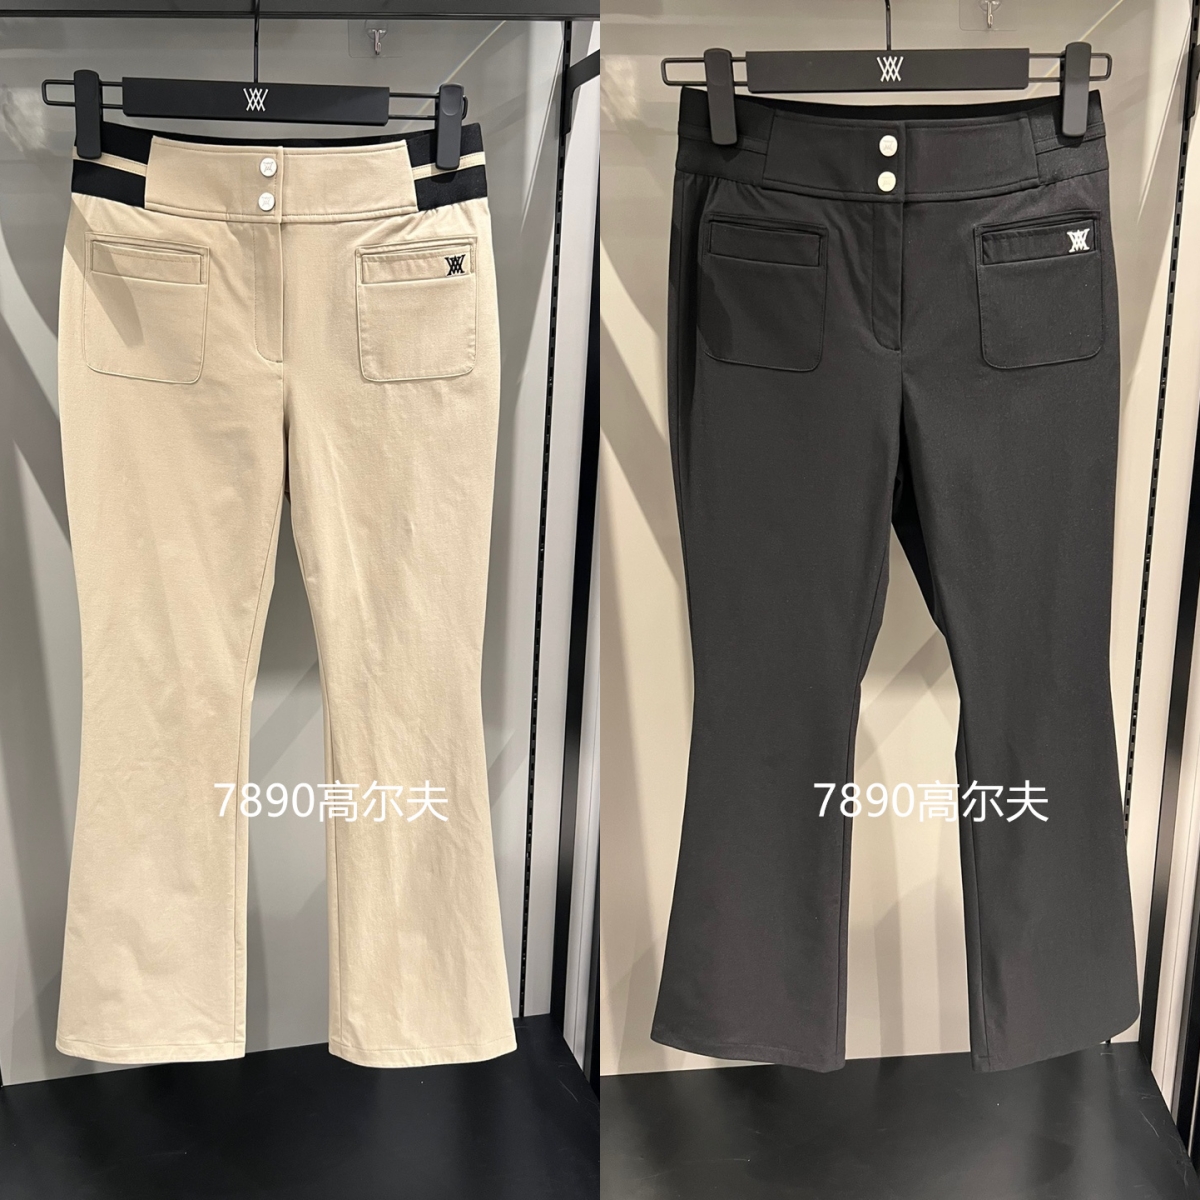 高尔夫女装裤子24年春季新品时尚运动2色百搭韩国代购促销